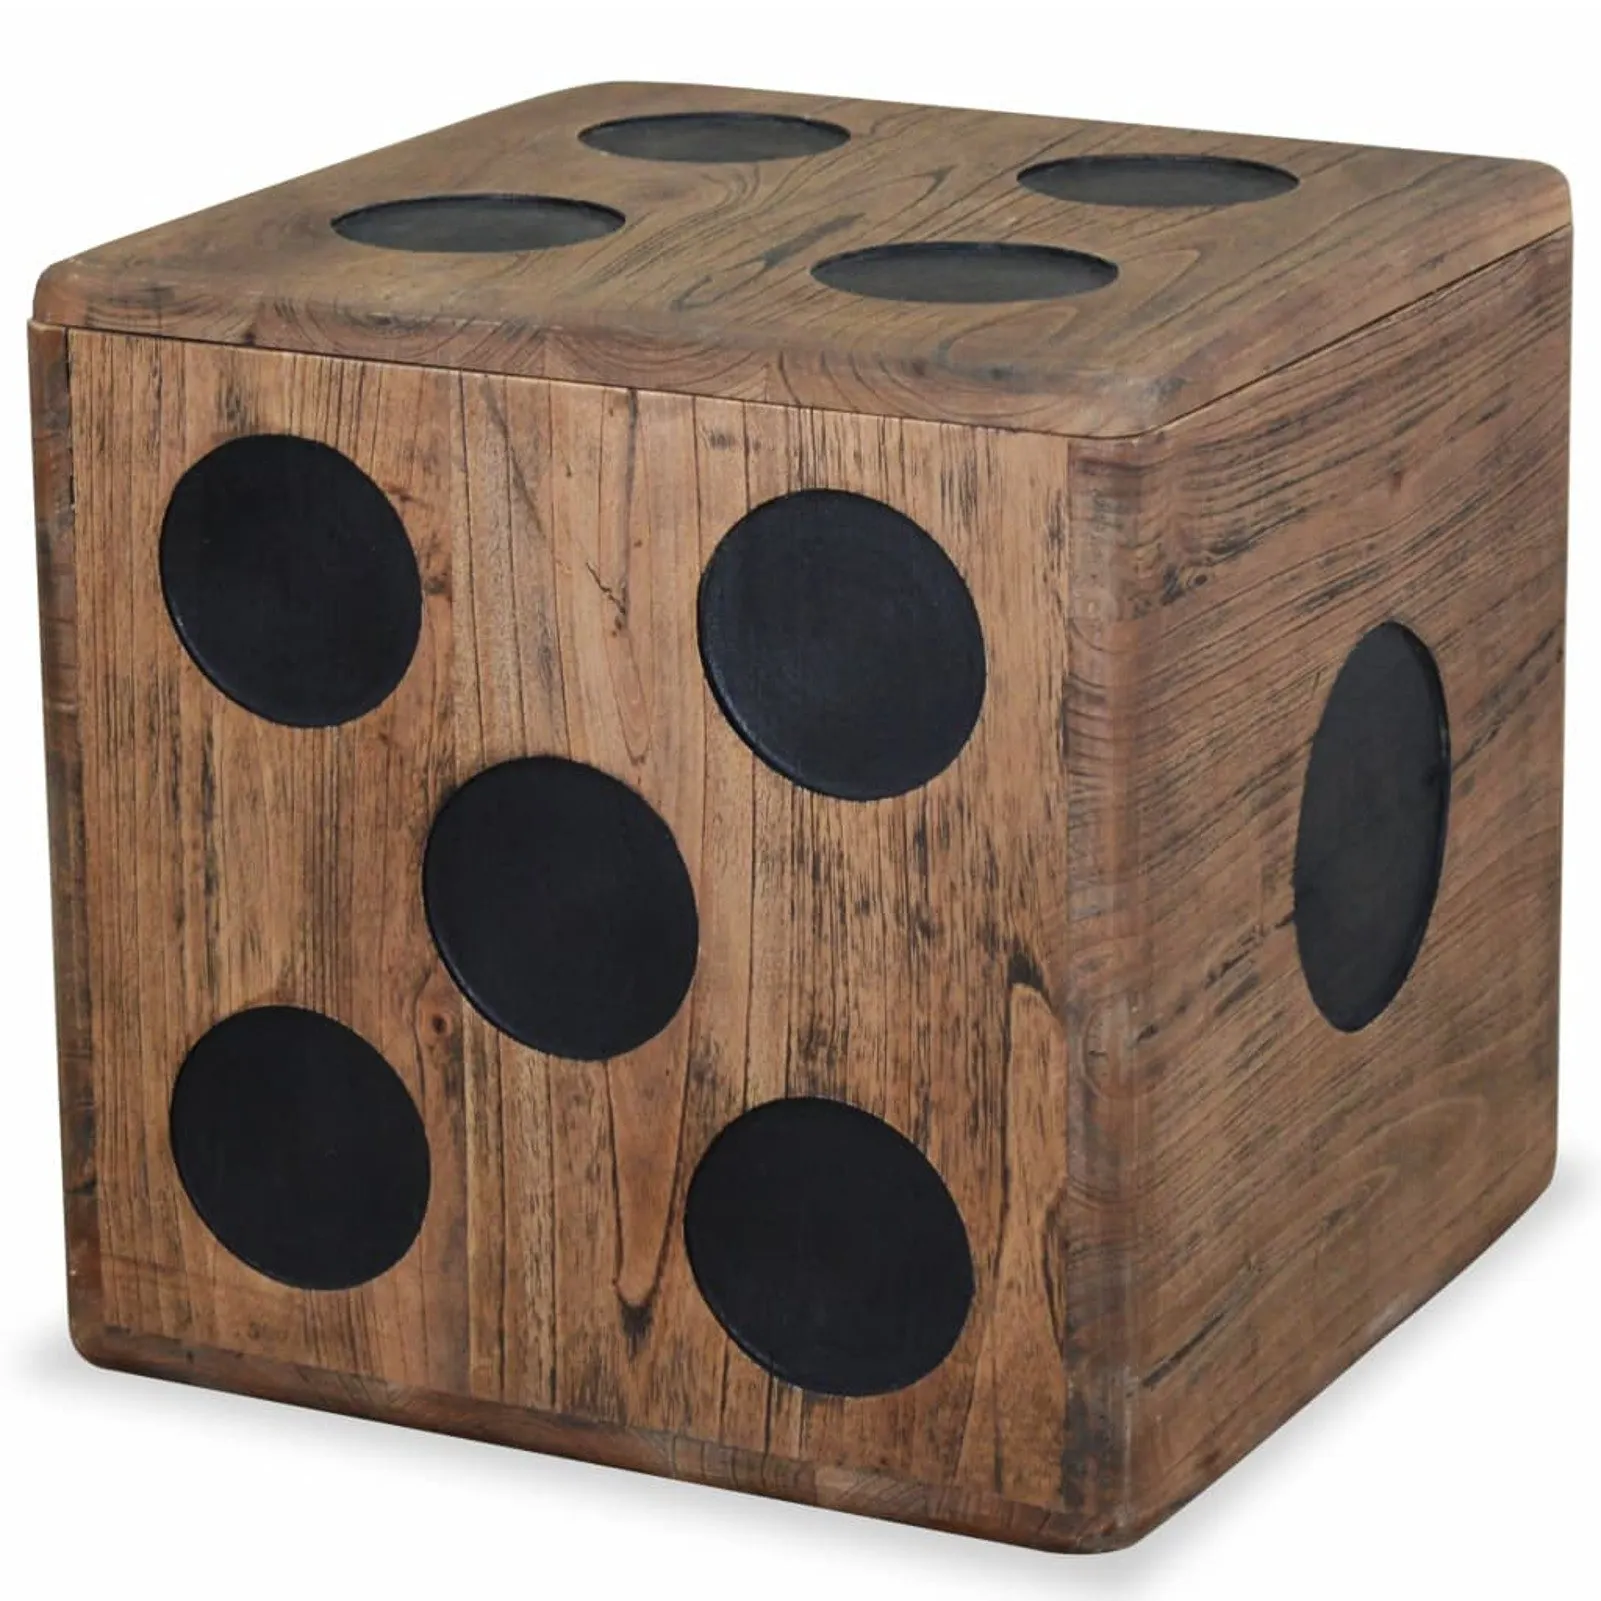 

Storage Box Mindi Wood 15.7"x15.7"x15.7" Dice Design